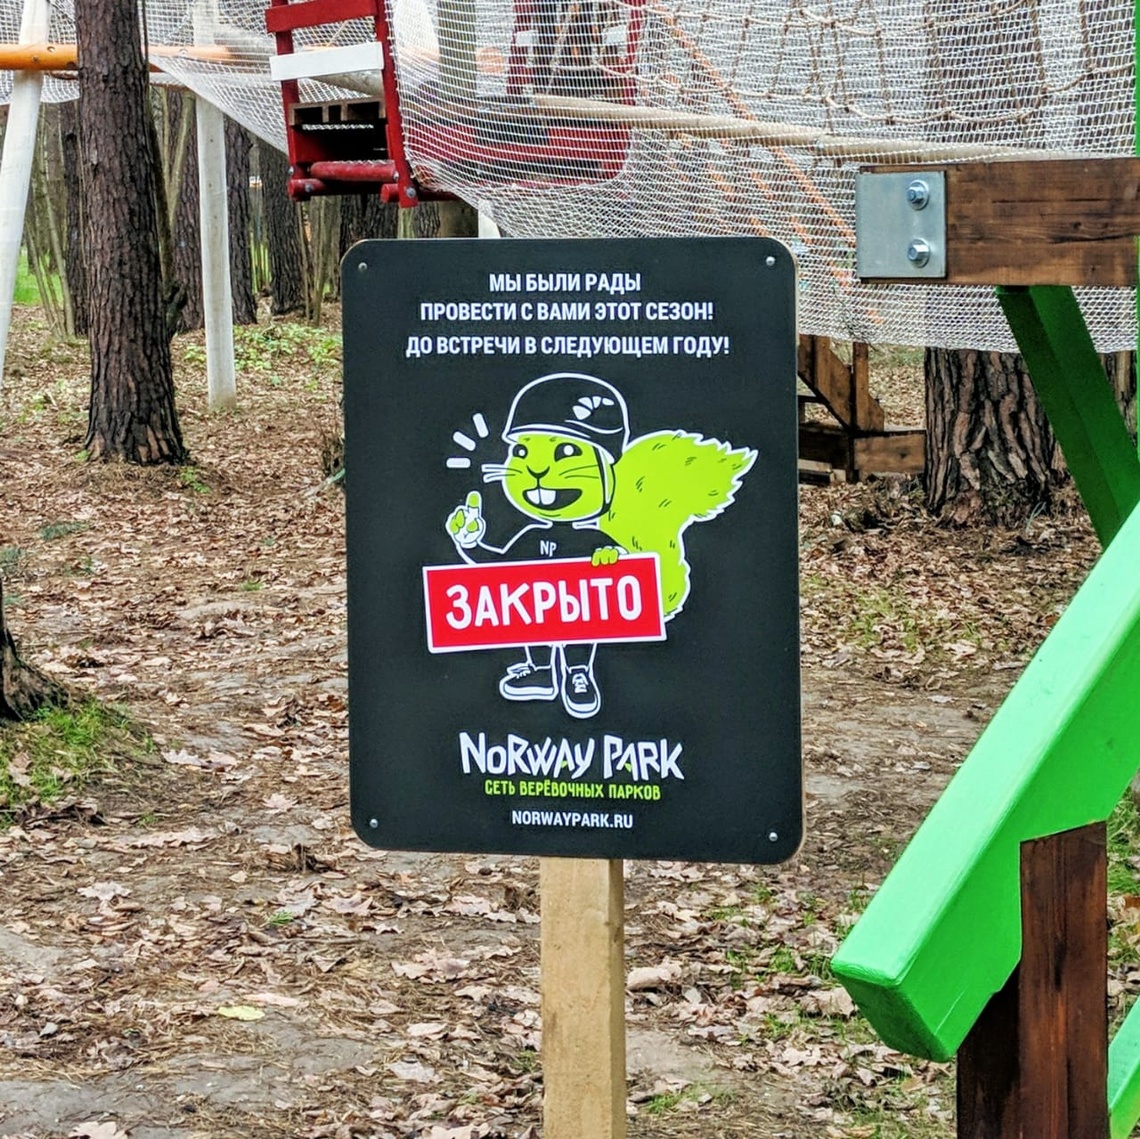 Табличка о закрытии сезона, ноябрь 2019, Верёвочный парк / Норвежский парк (Norway Park)